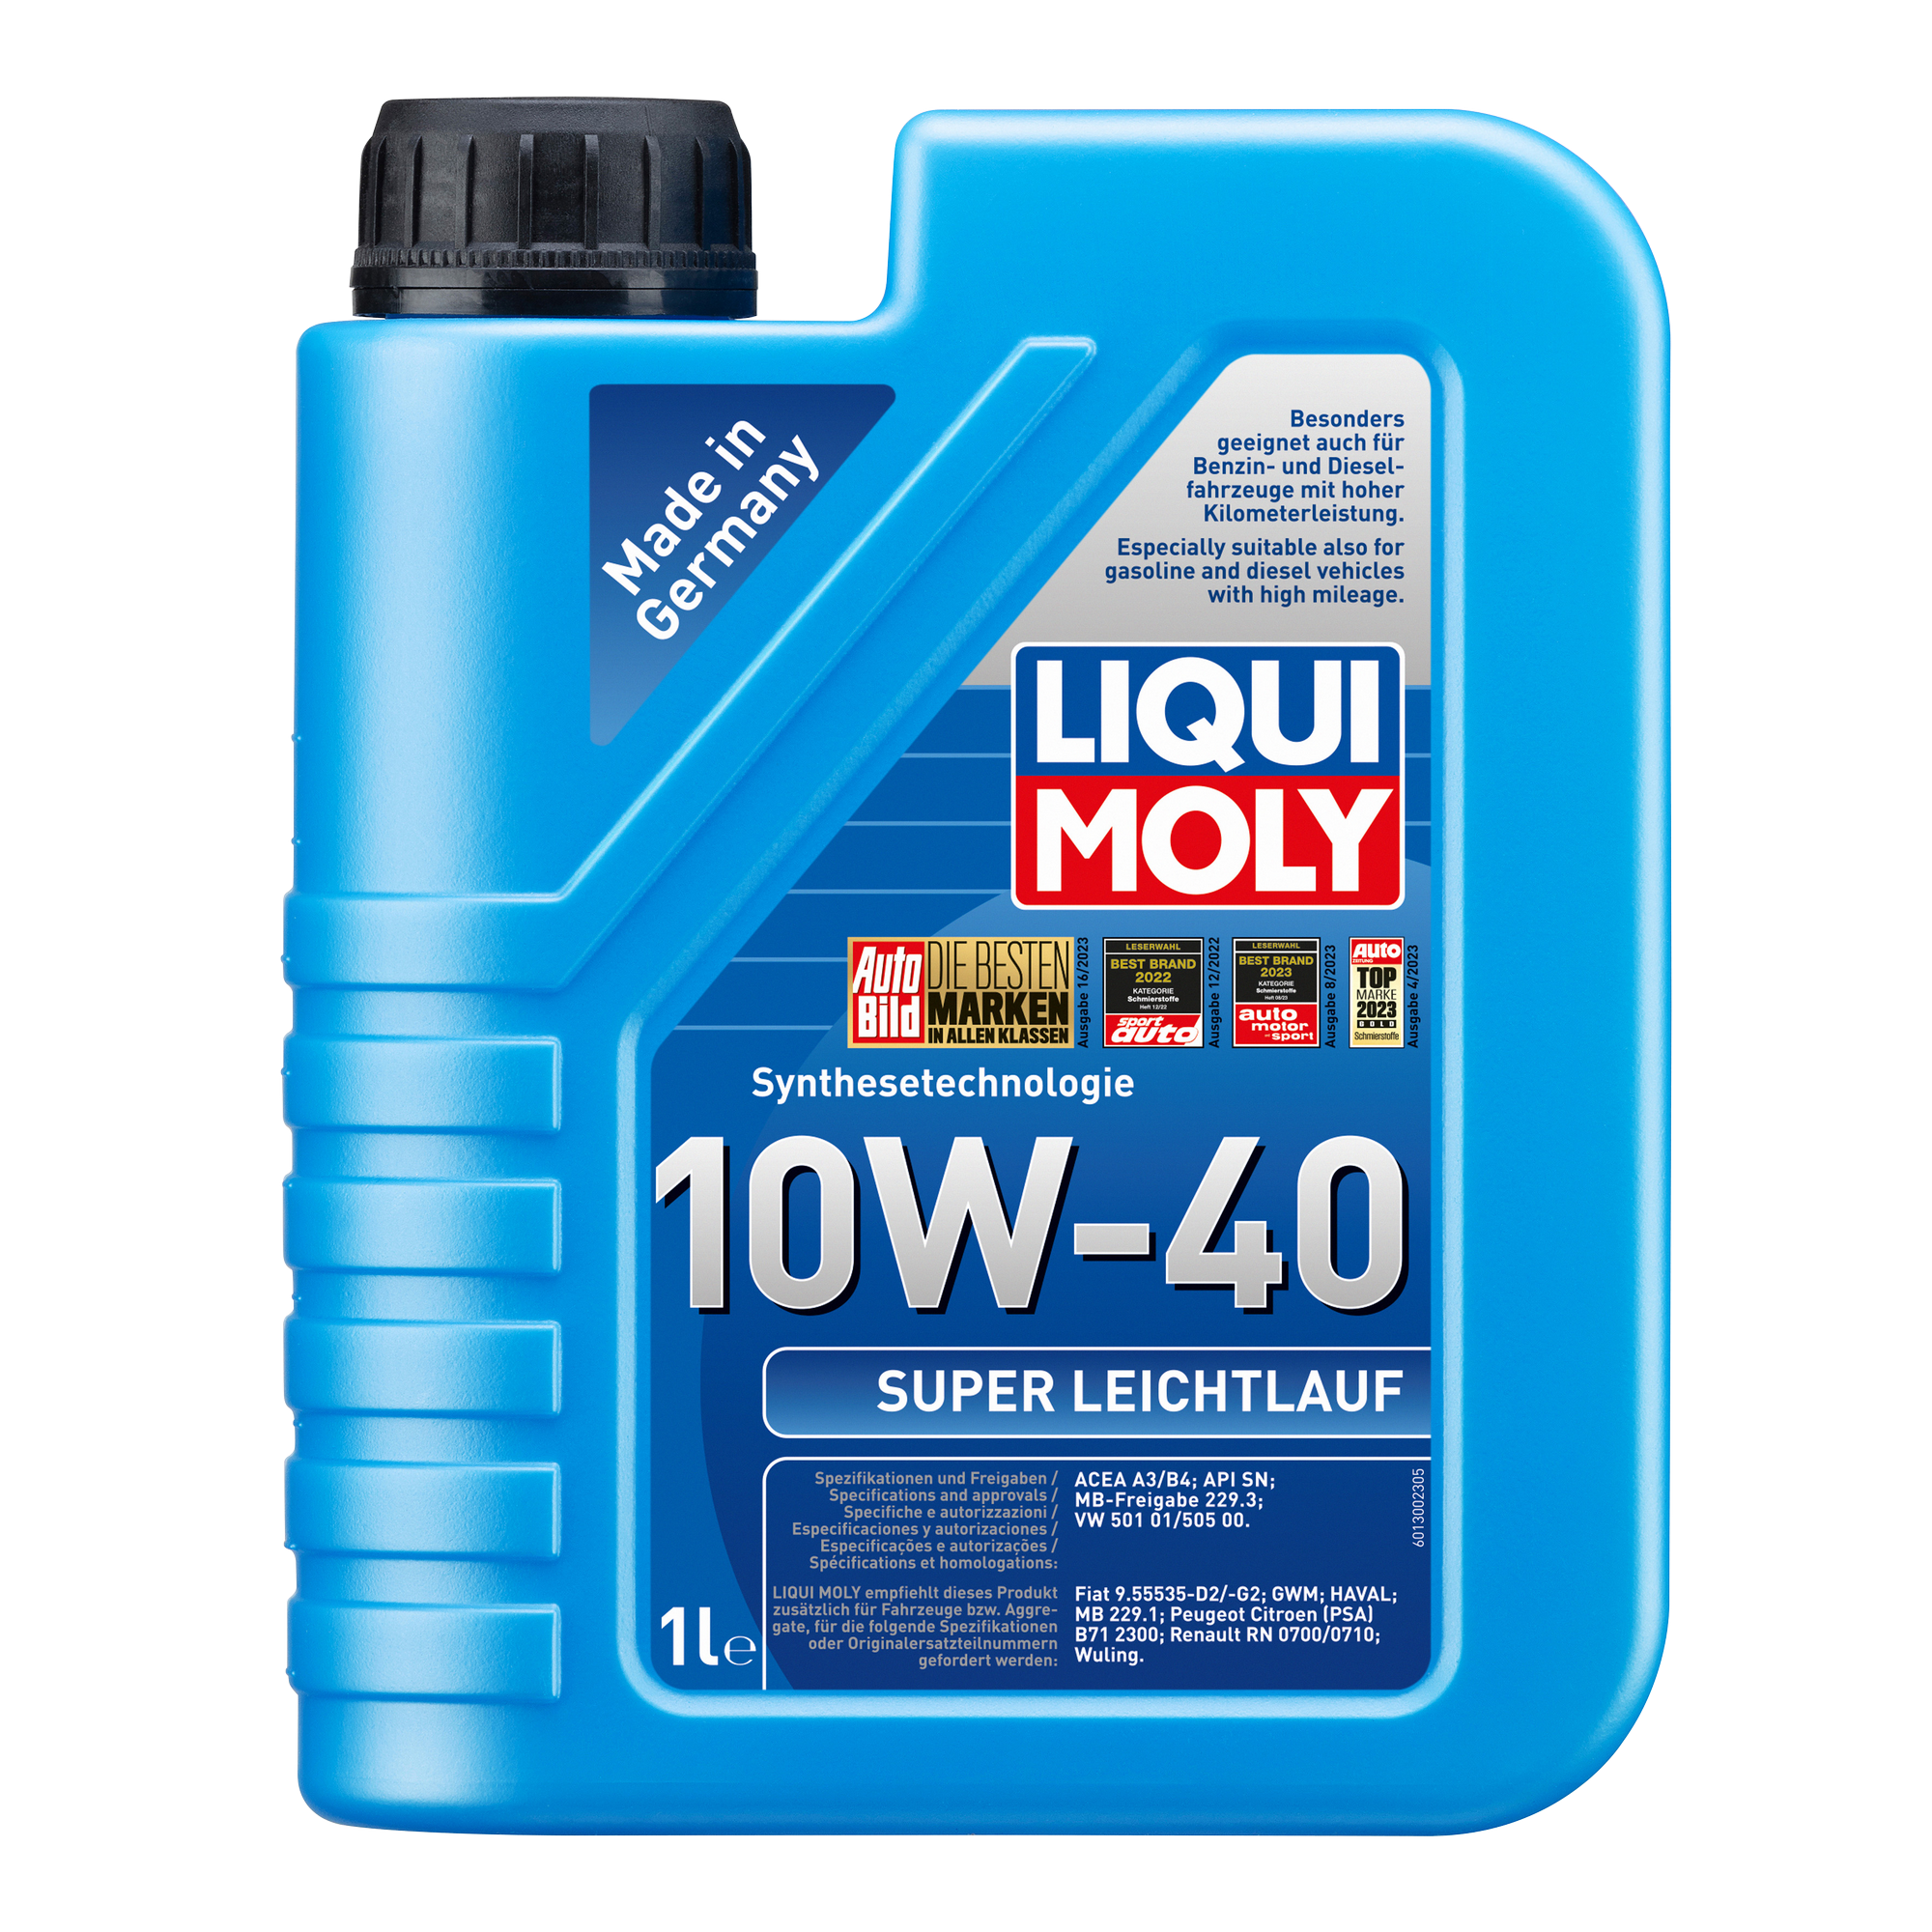 Leichtlauf-Motoröl '10W-40' 1 l + product picture